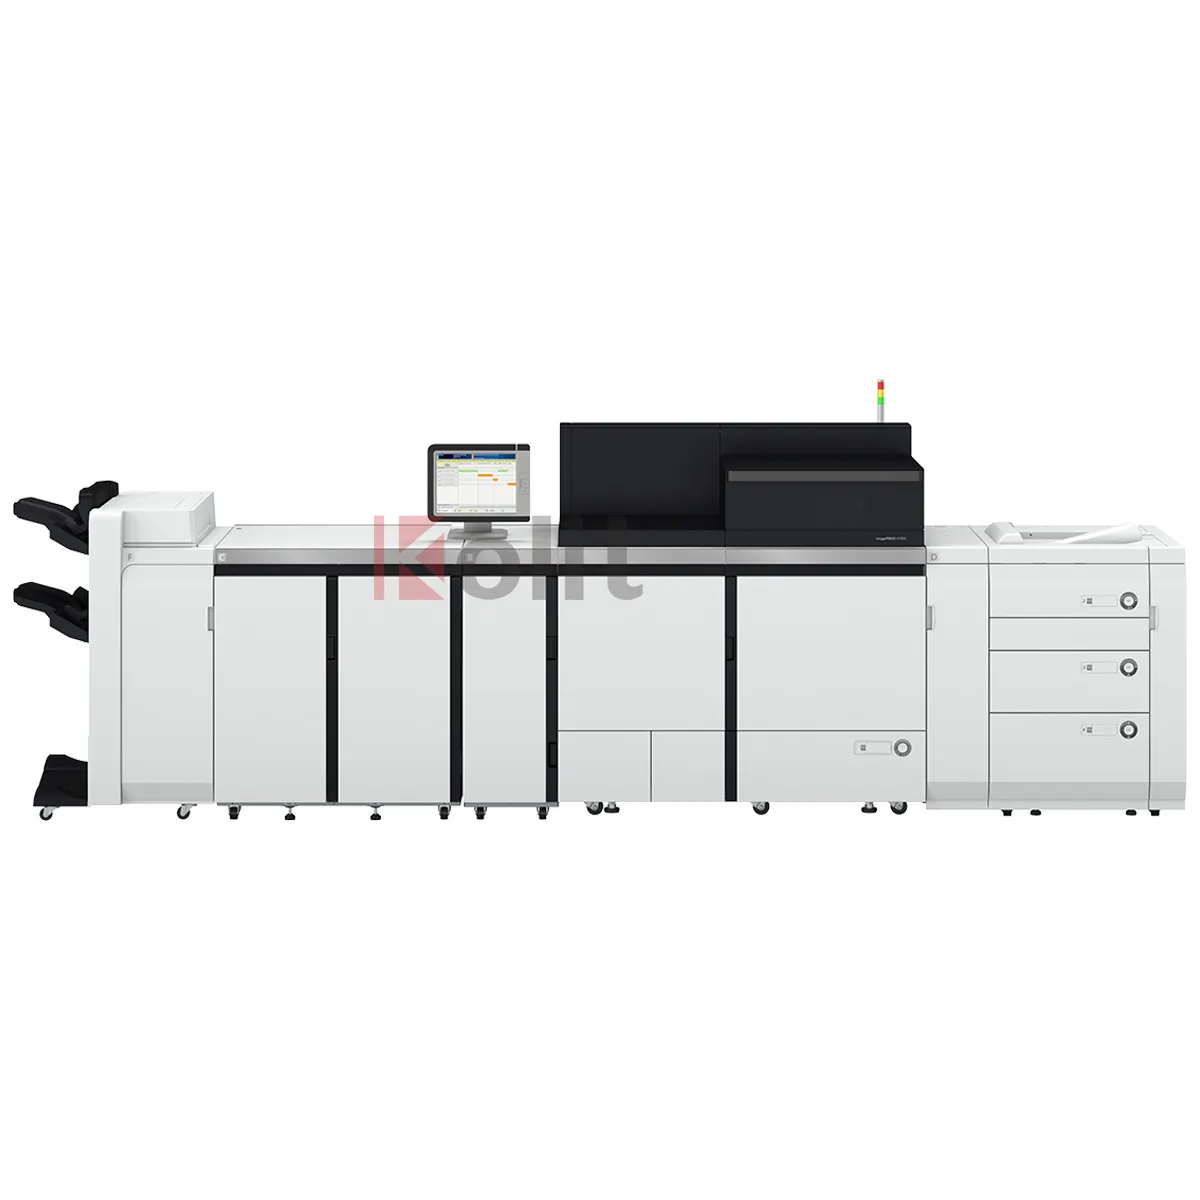 Nagelneu hohe Farboproduktion Digitalpresse V1350 Automatisierung Drucker Kopierer mit hoher Druckproduktivität